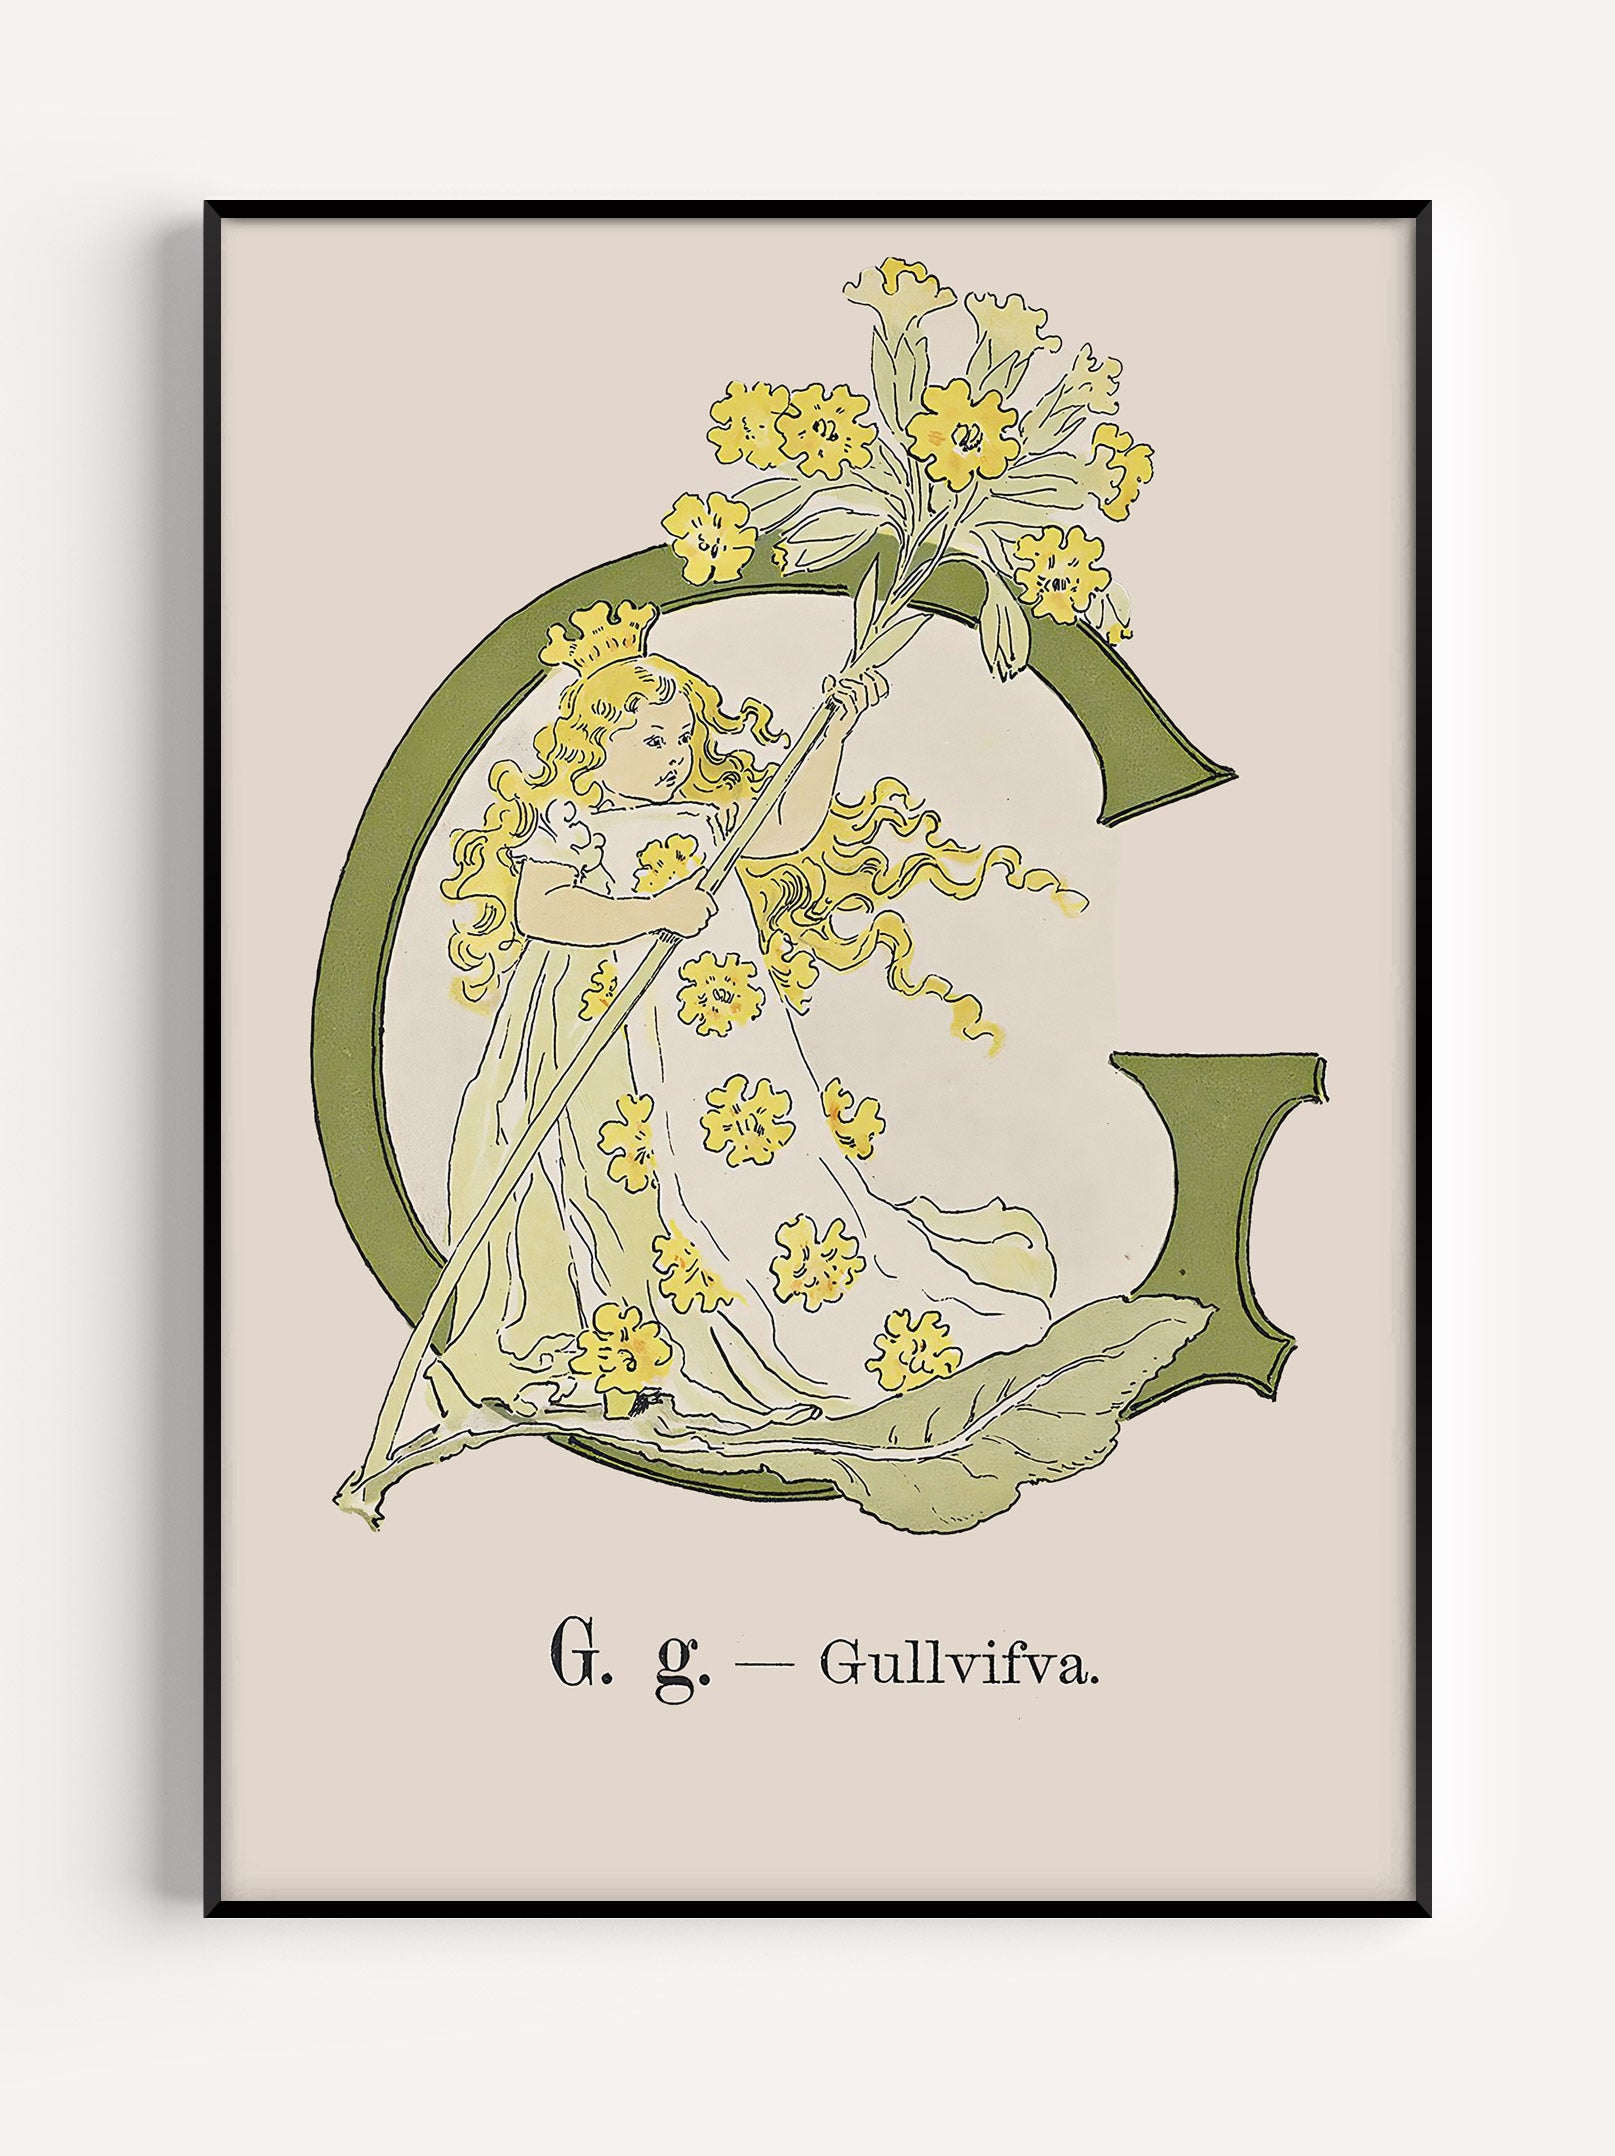 Prinsarnes Alfabet - G - Fine art prints - poster - av Ottilias originalillustrationer från 1800-talet.